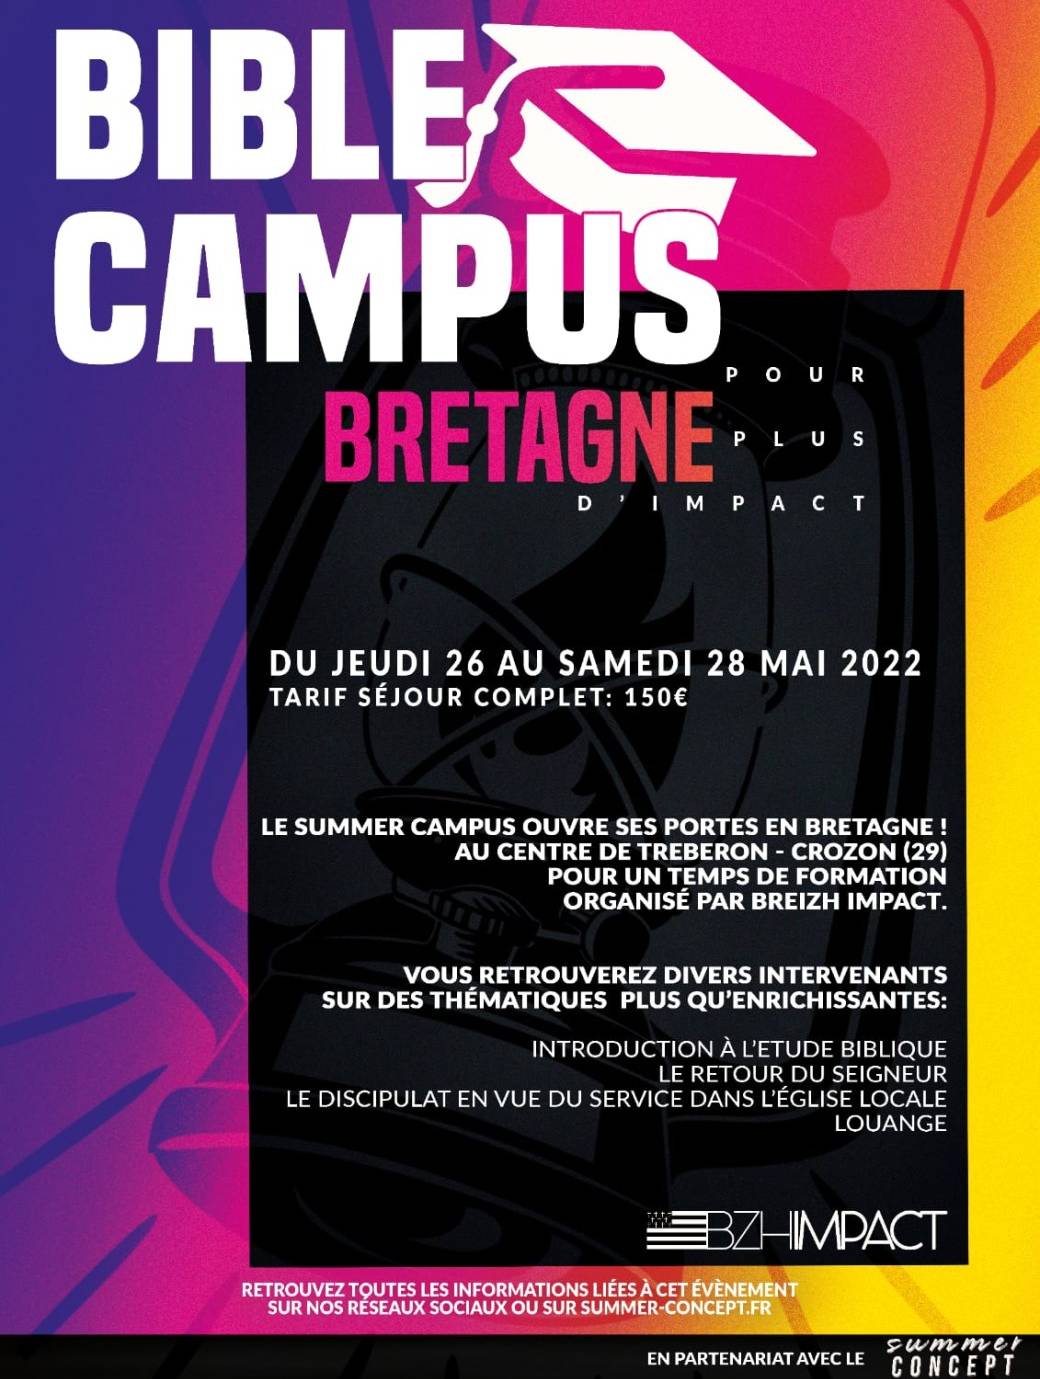 Bible Campus - Bretagne